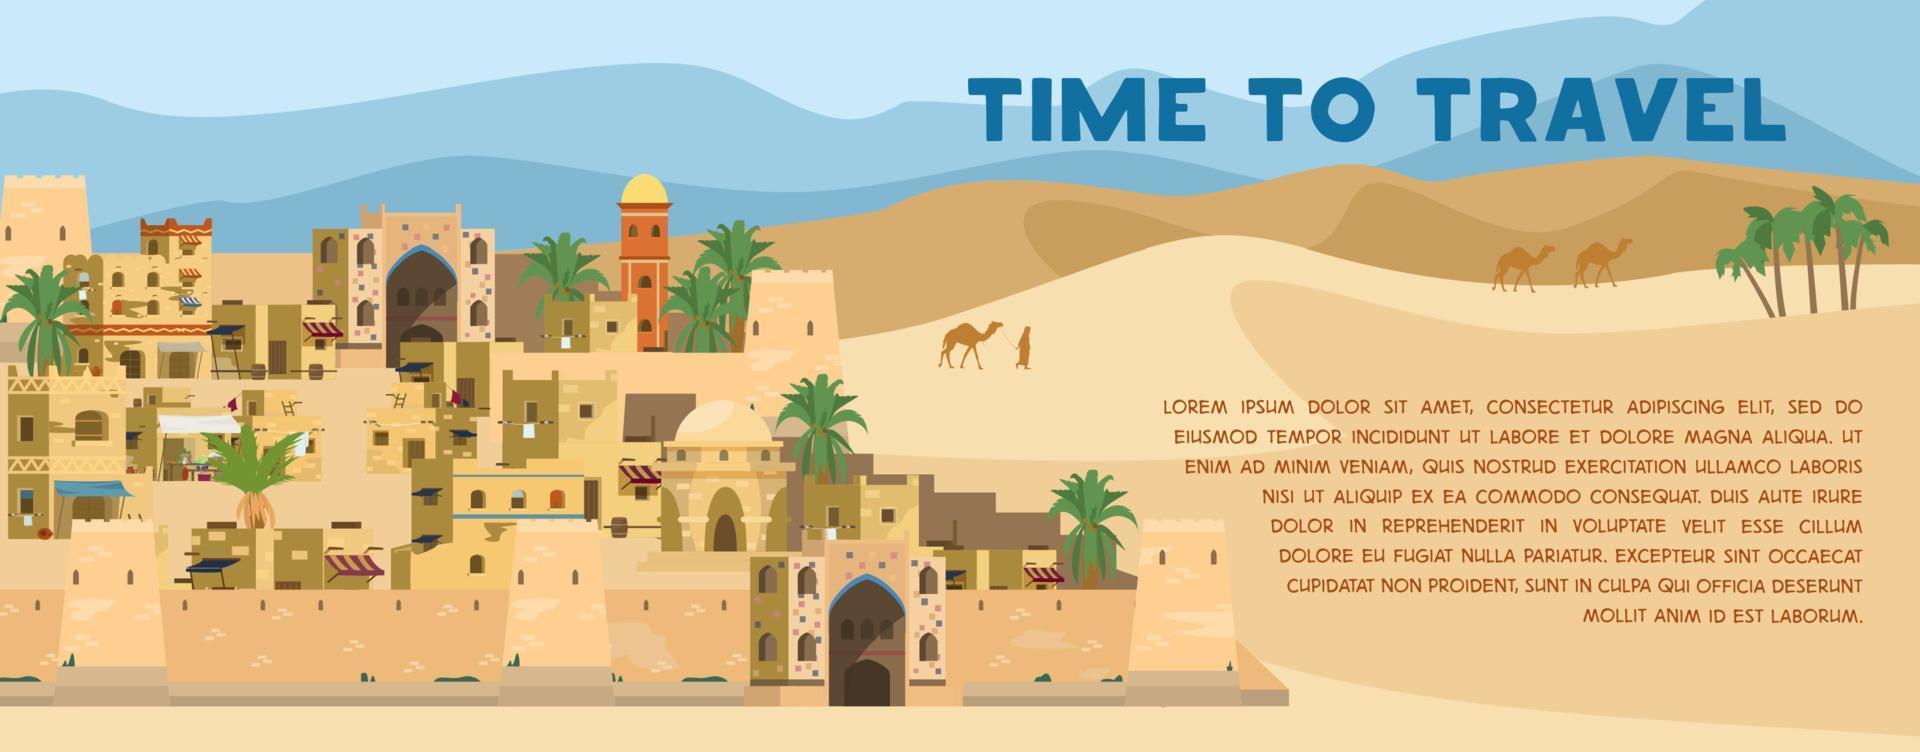 Zeit zum Reisen Vektorbanner mit Illustration der alten arabischen Stadt in Wüstenlandschaft mit traditionellen Lehmziegelhäusern, Palmen, Kamelen. flaches Design. vektor